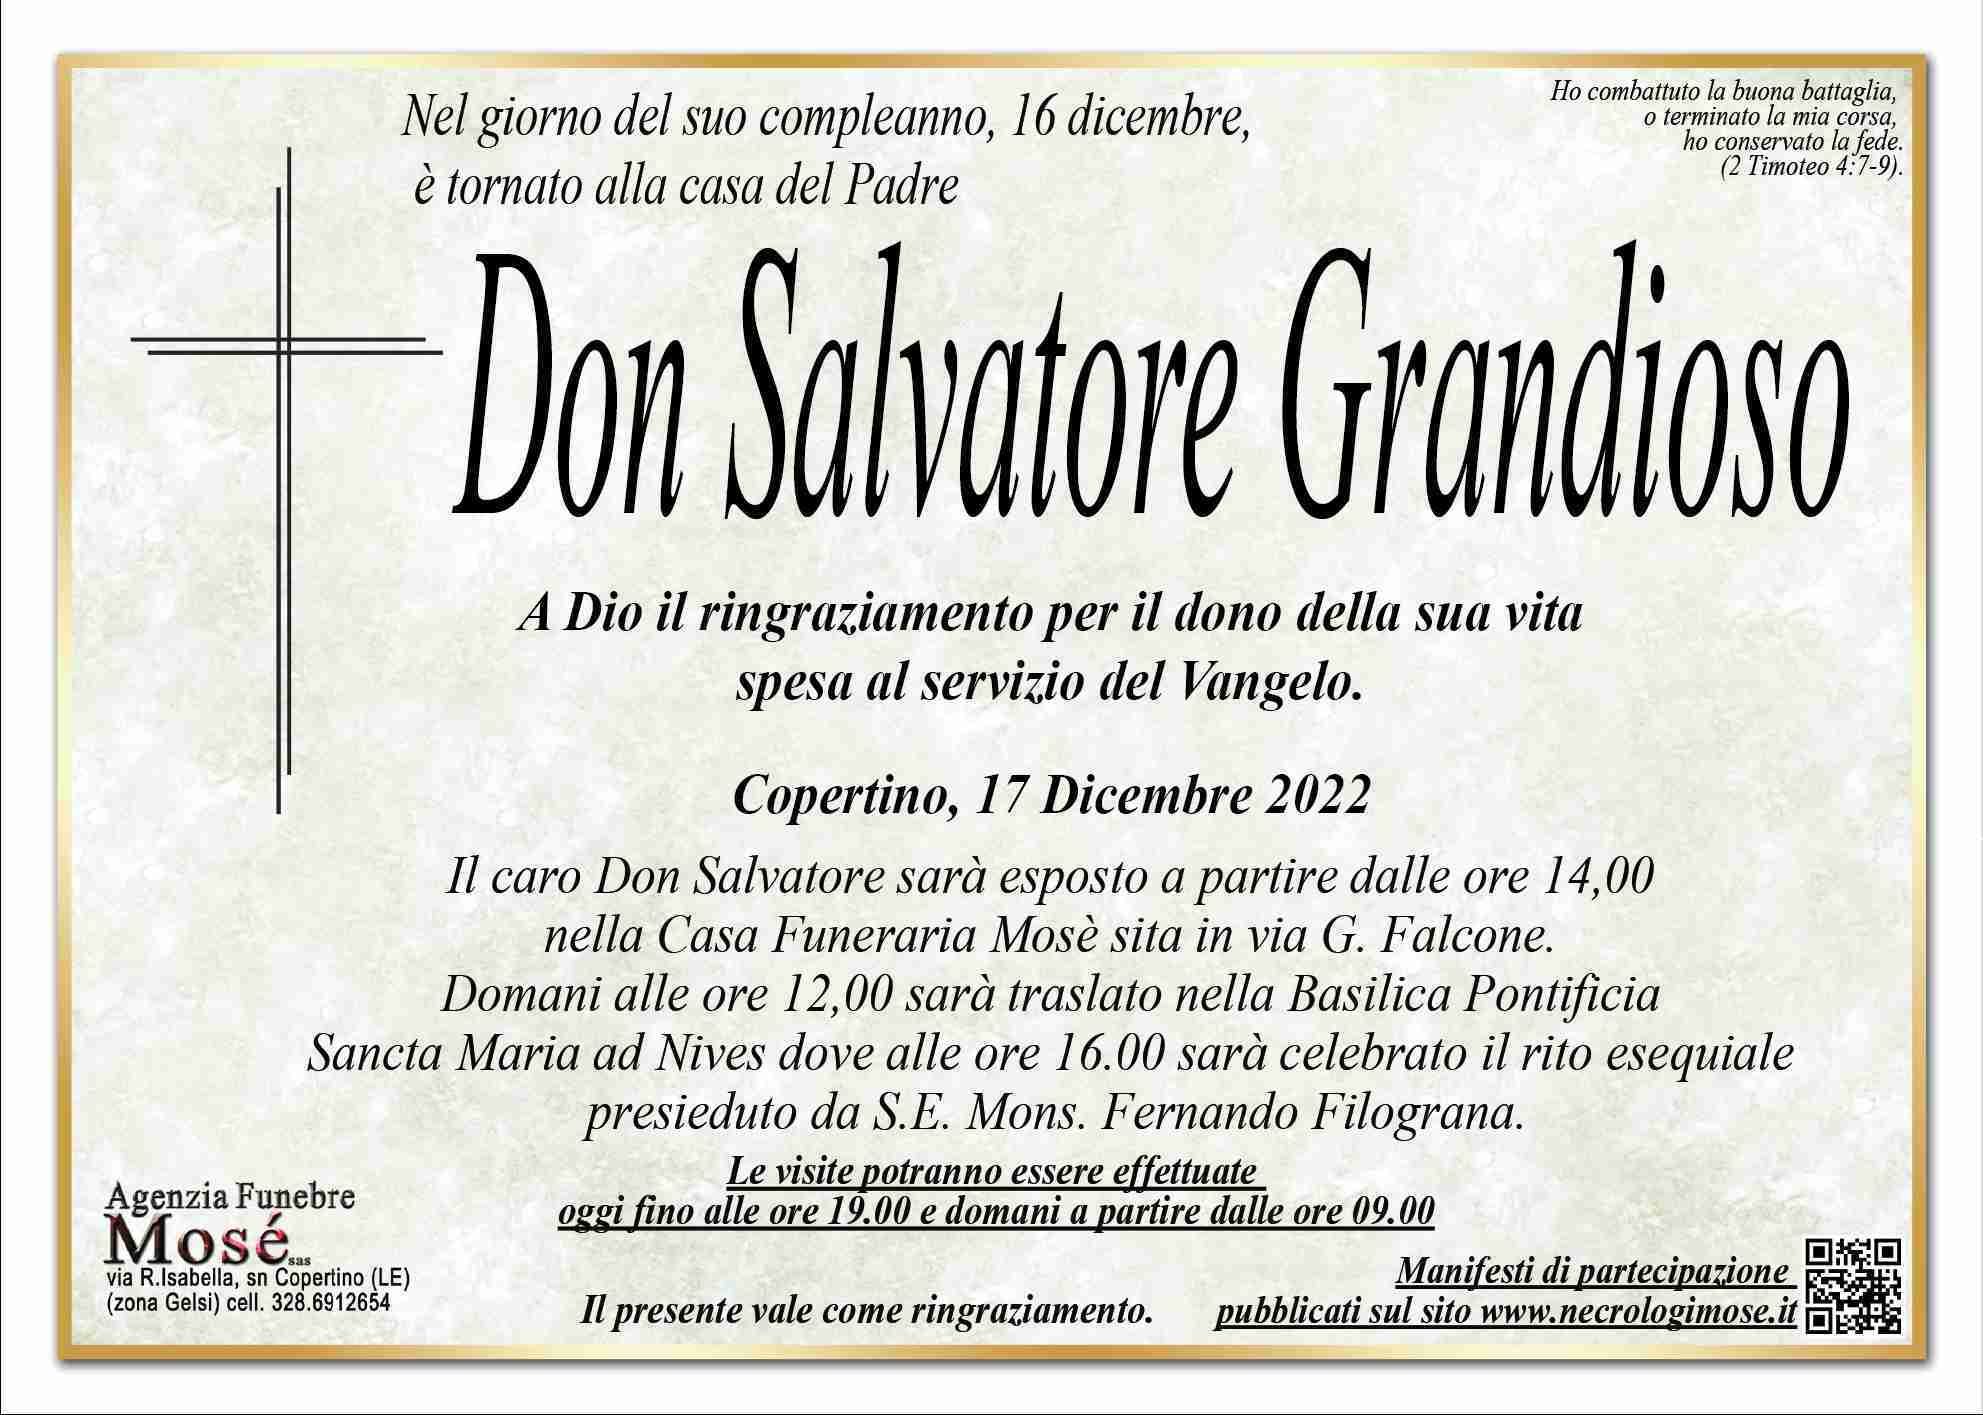 Don Salvatore Grandioso